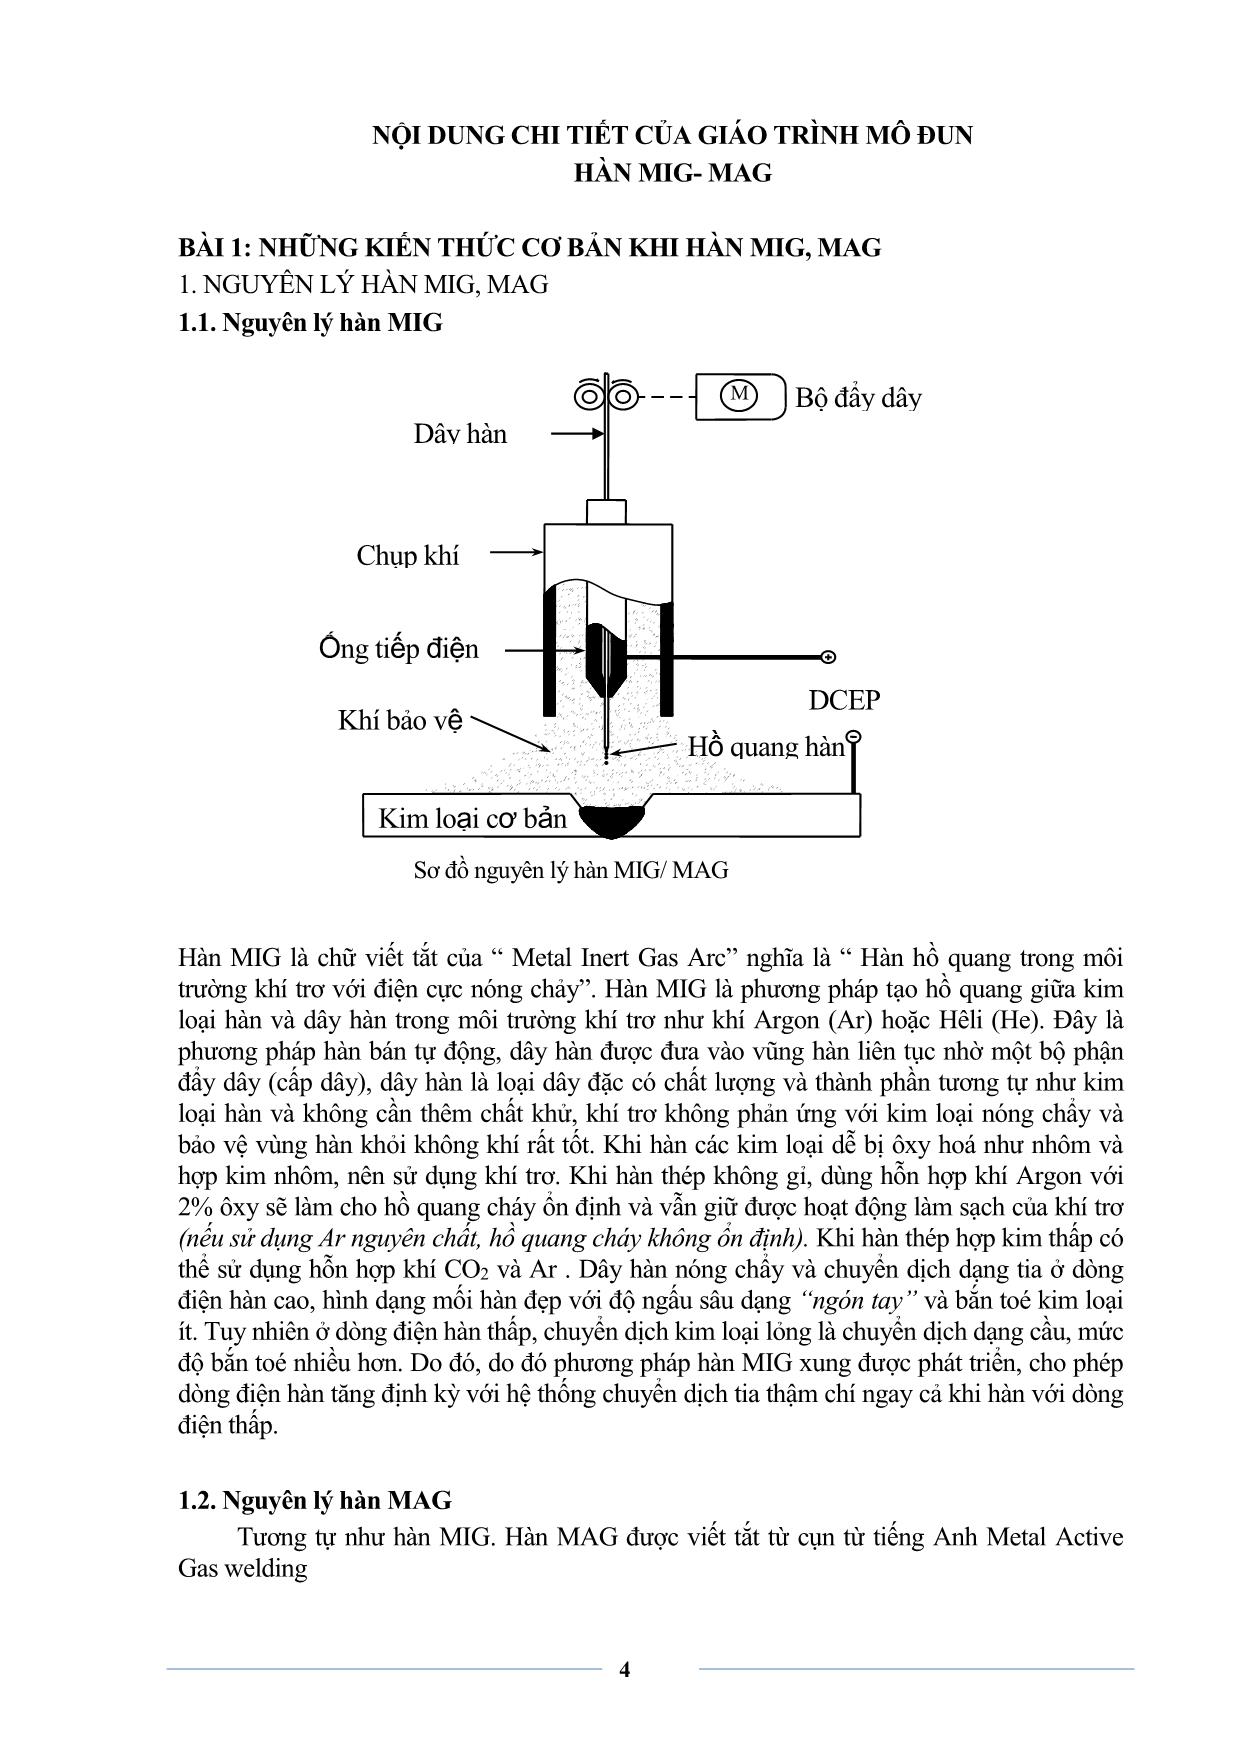 Giáo trình sơ cấp Hàn MIG-MAG trang 6